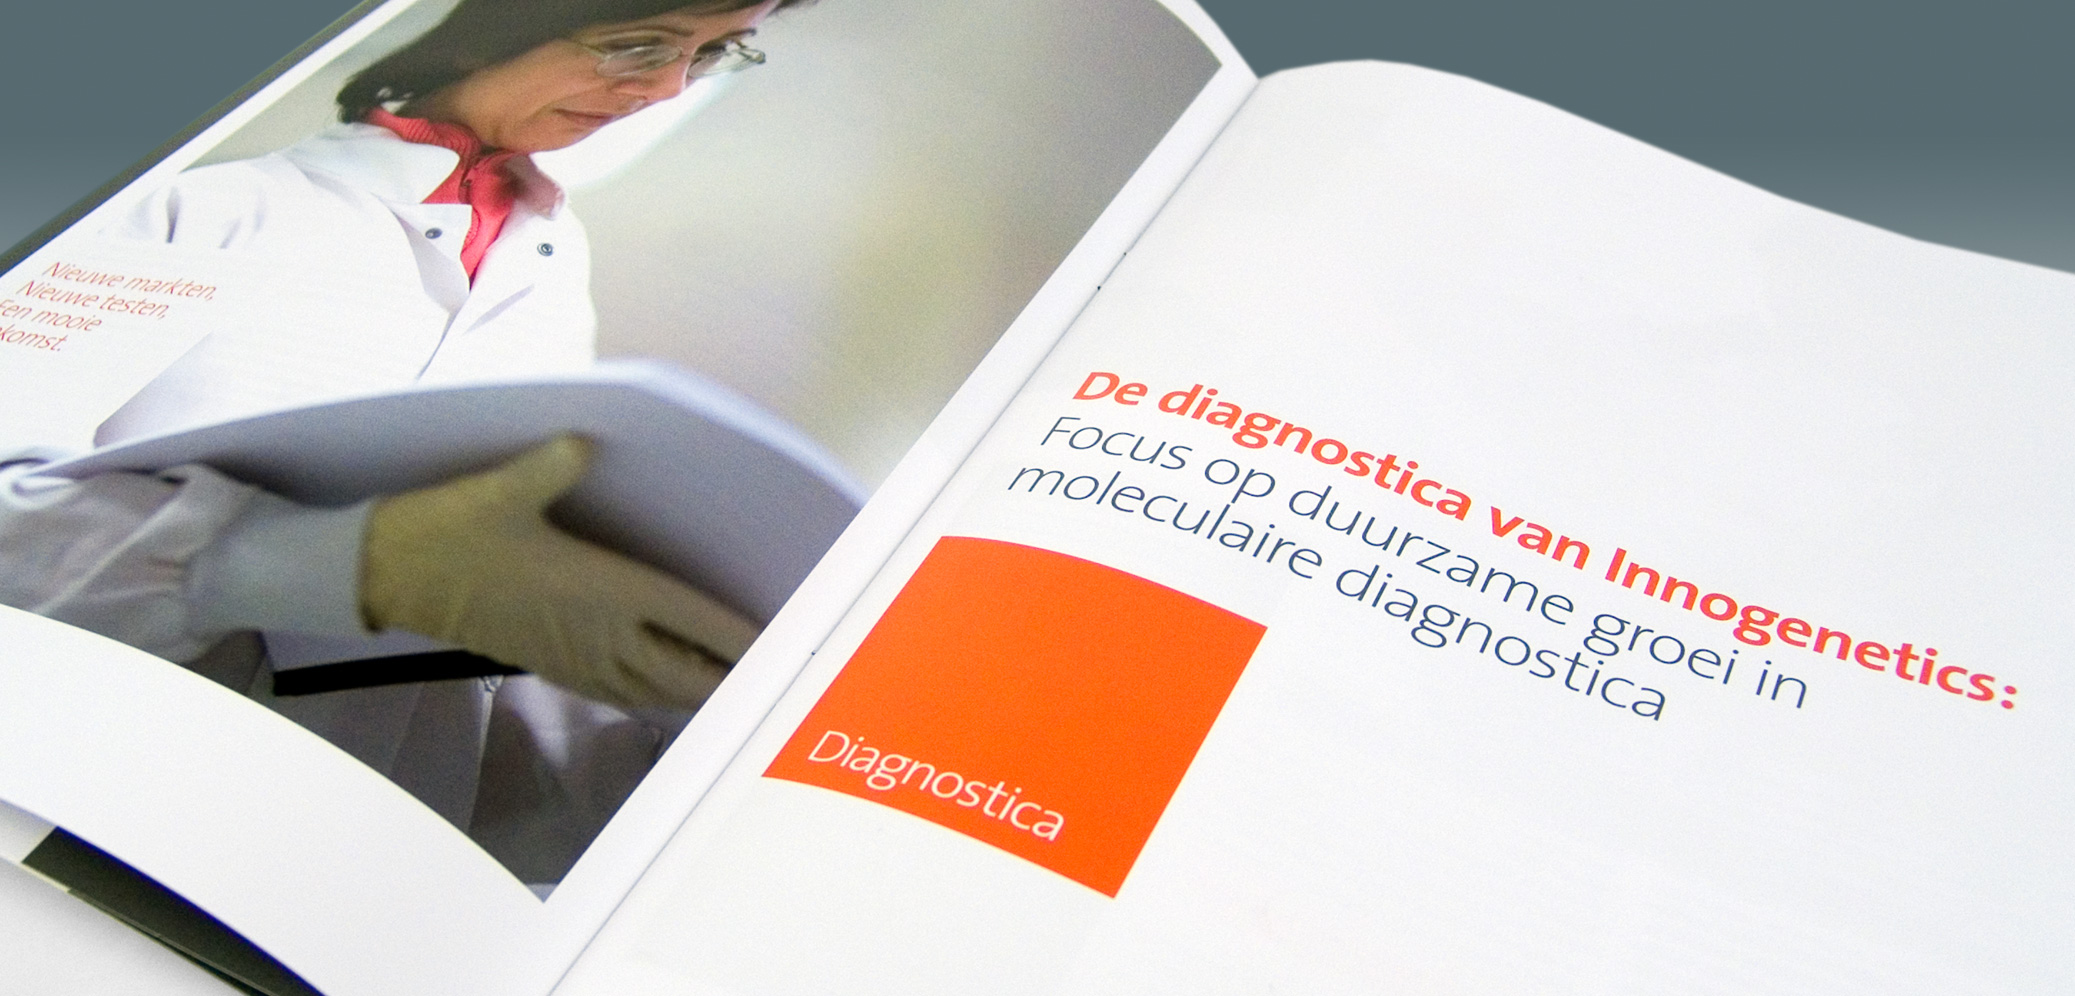 Innogenetics - Annual Report 2006